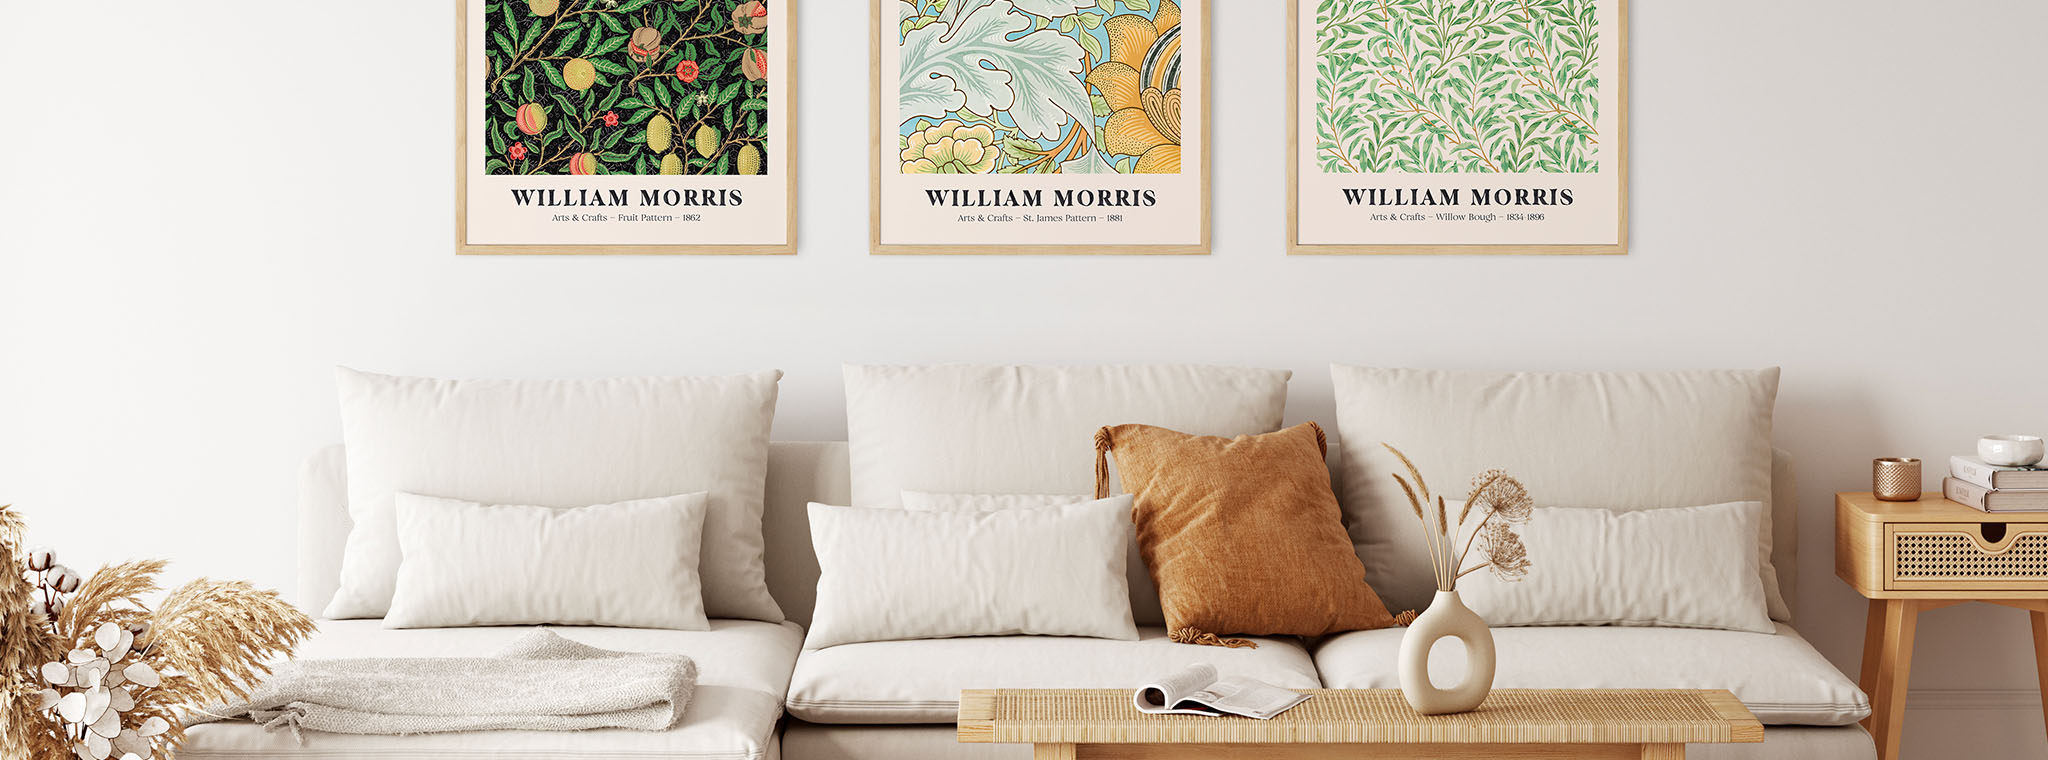 William Morris plakater